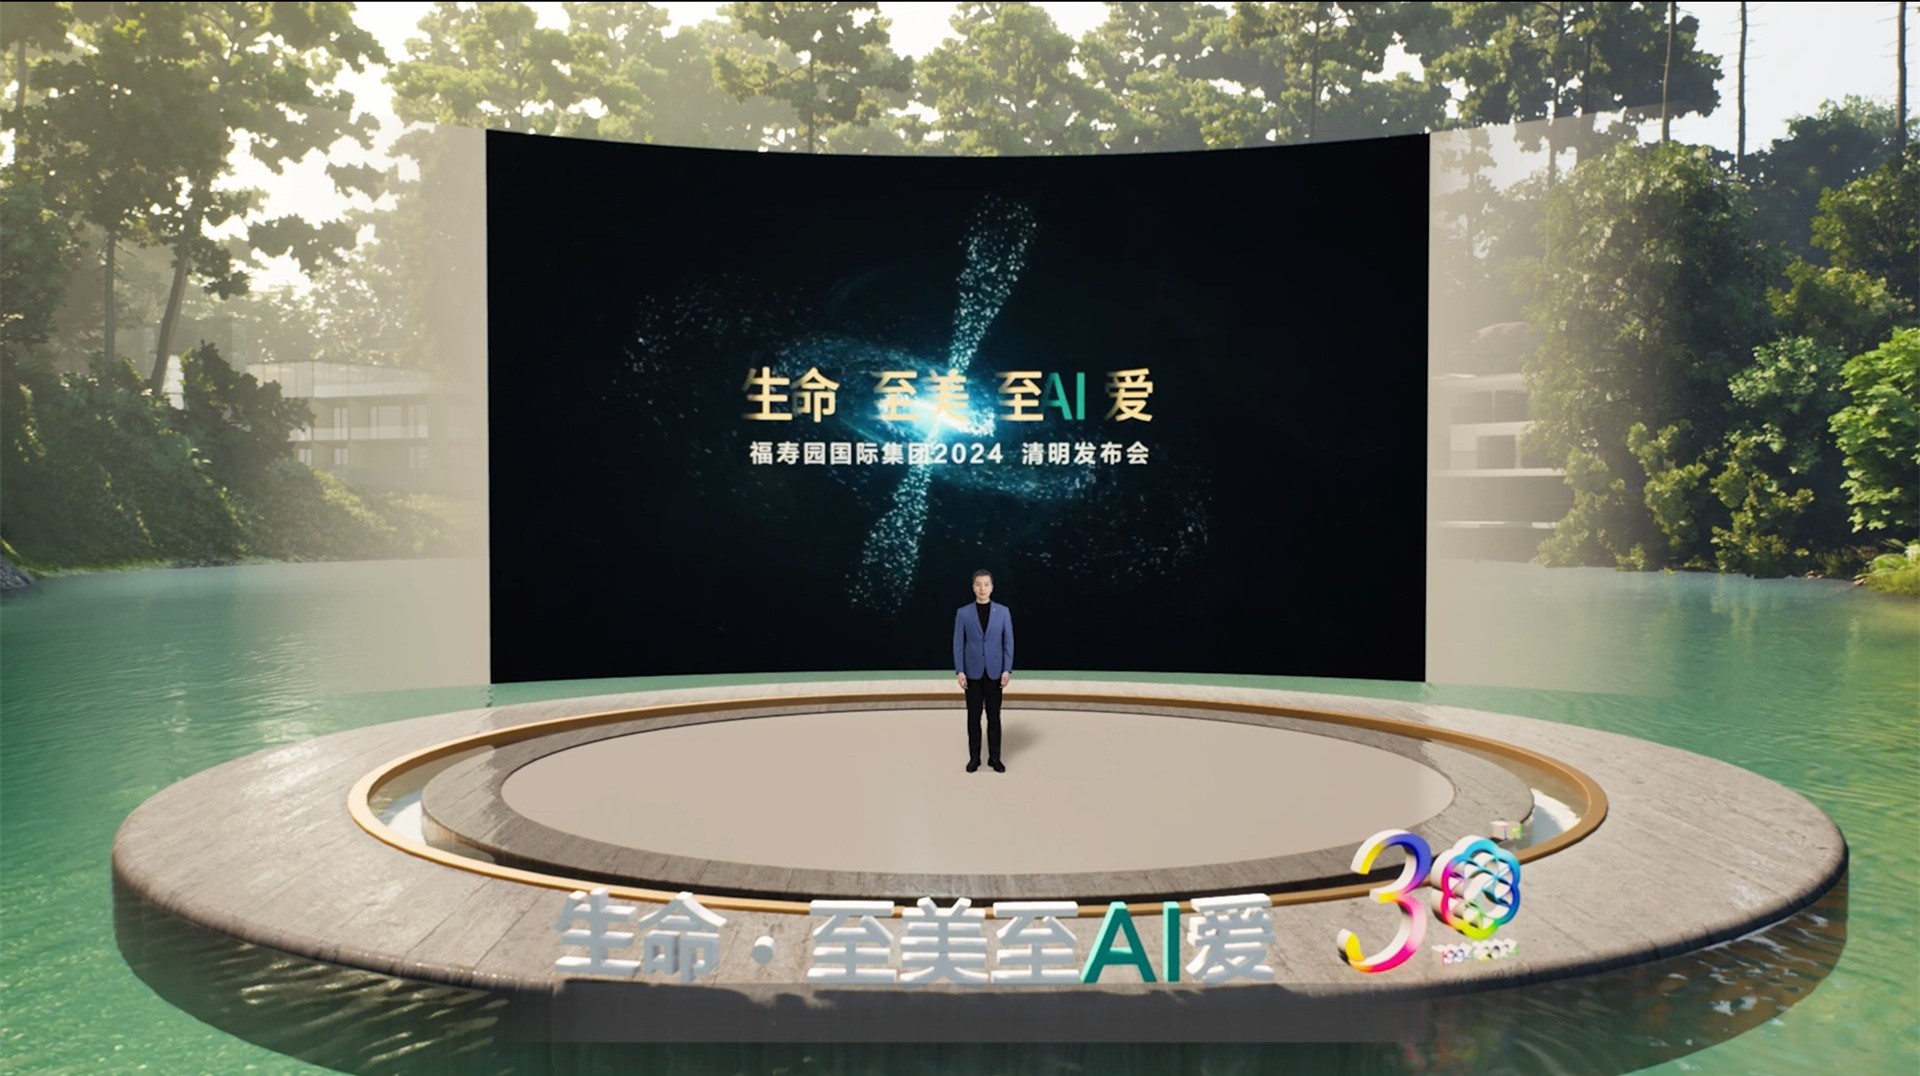 生命•至美至AI爱  福寿园举办业内首场“数智人虚拟清明发布会”